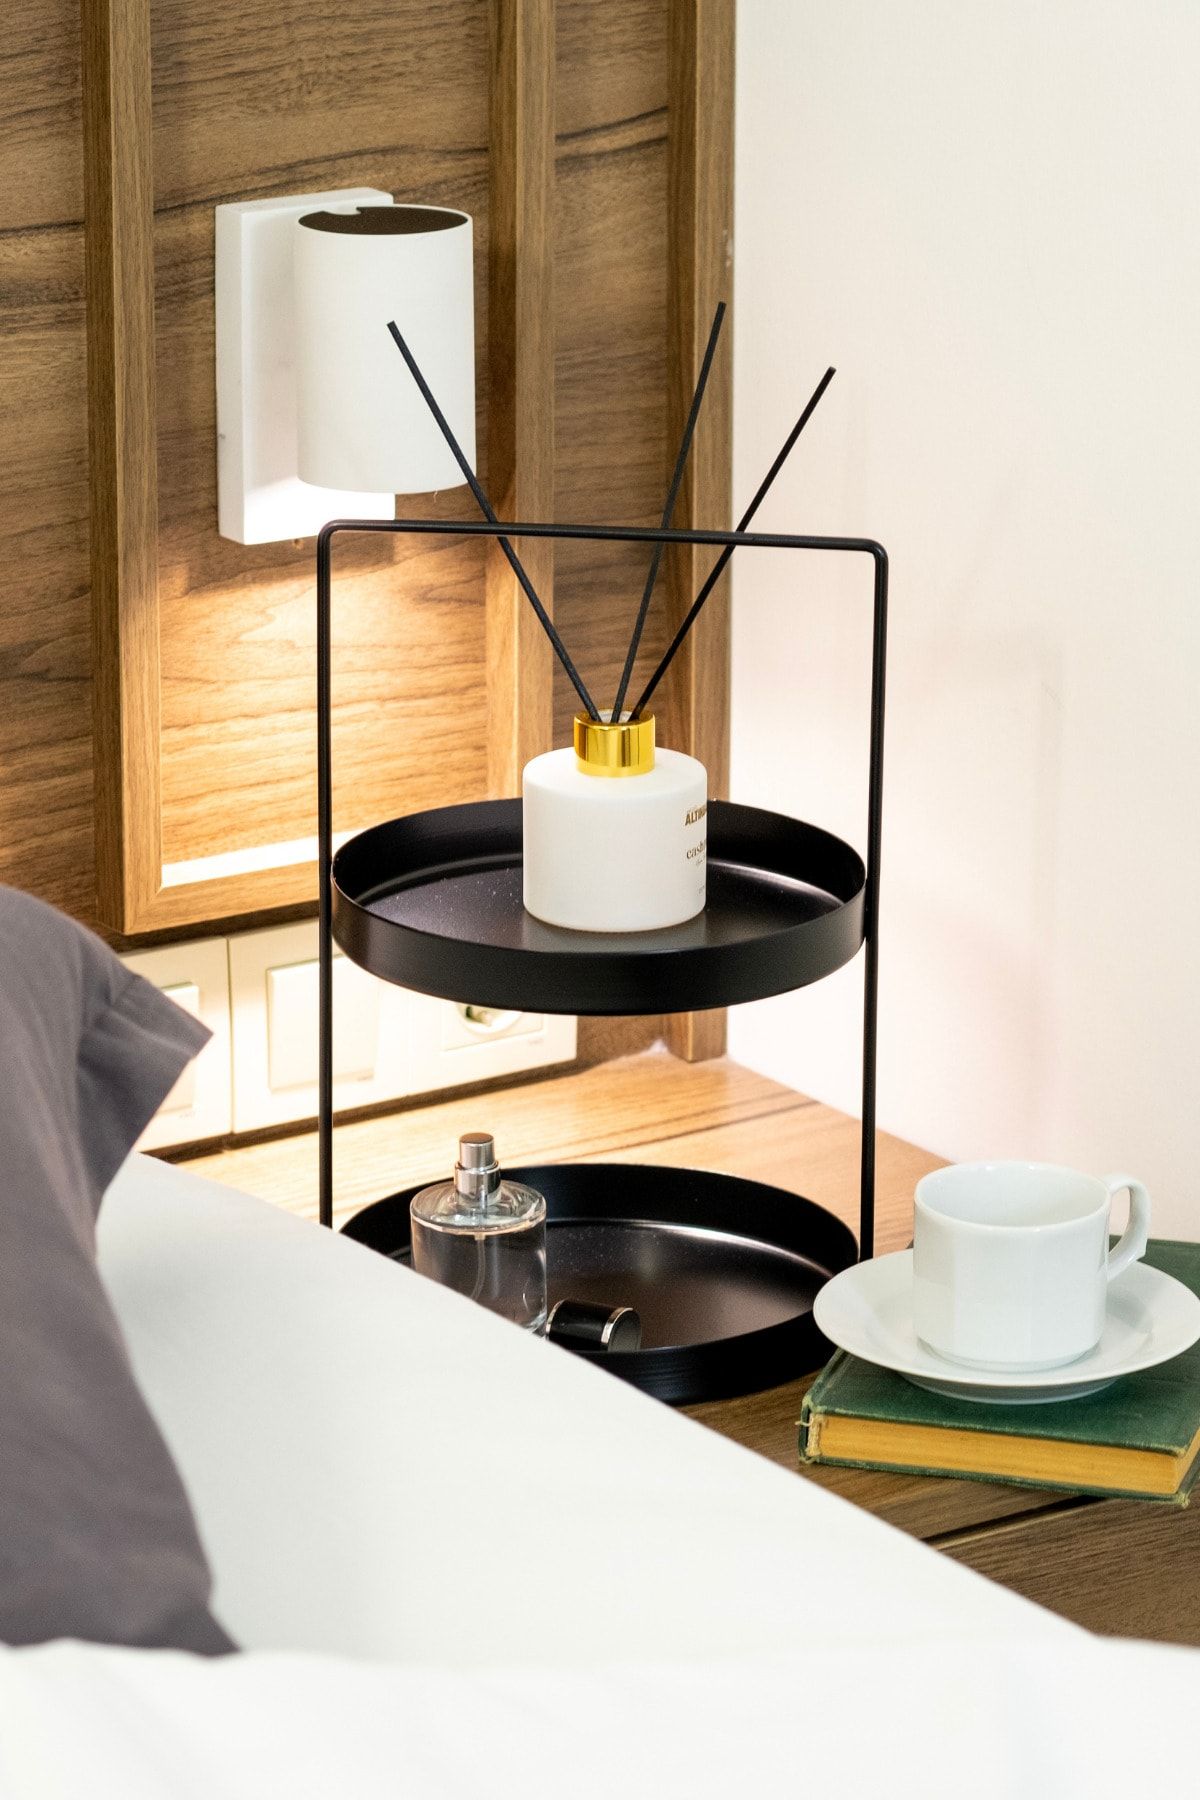 Rarart Concept Siyah 2 Katlı Metal Organizer - Çok Amaçlı Mutfak Ve Banyo Düzenleyici - Mini Çiçek Standı